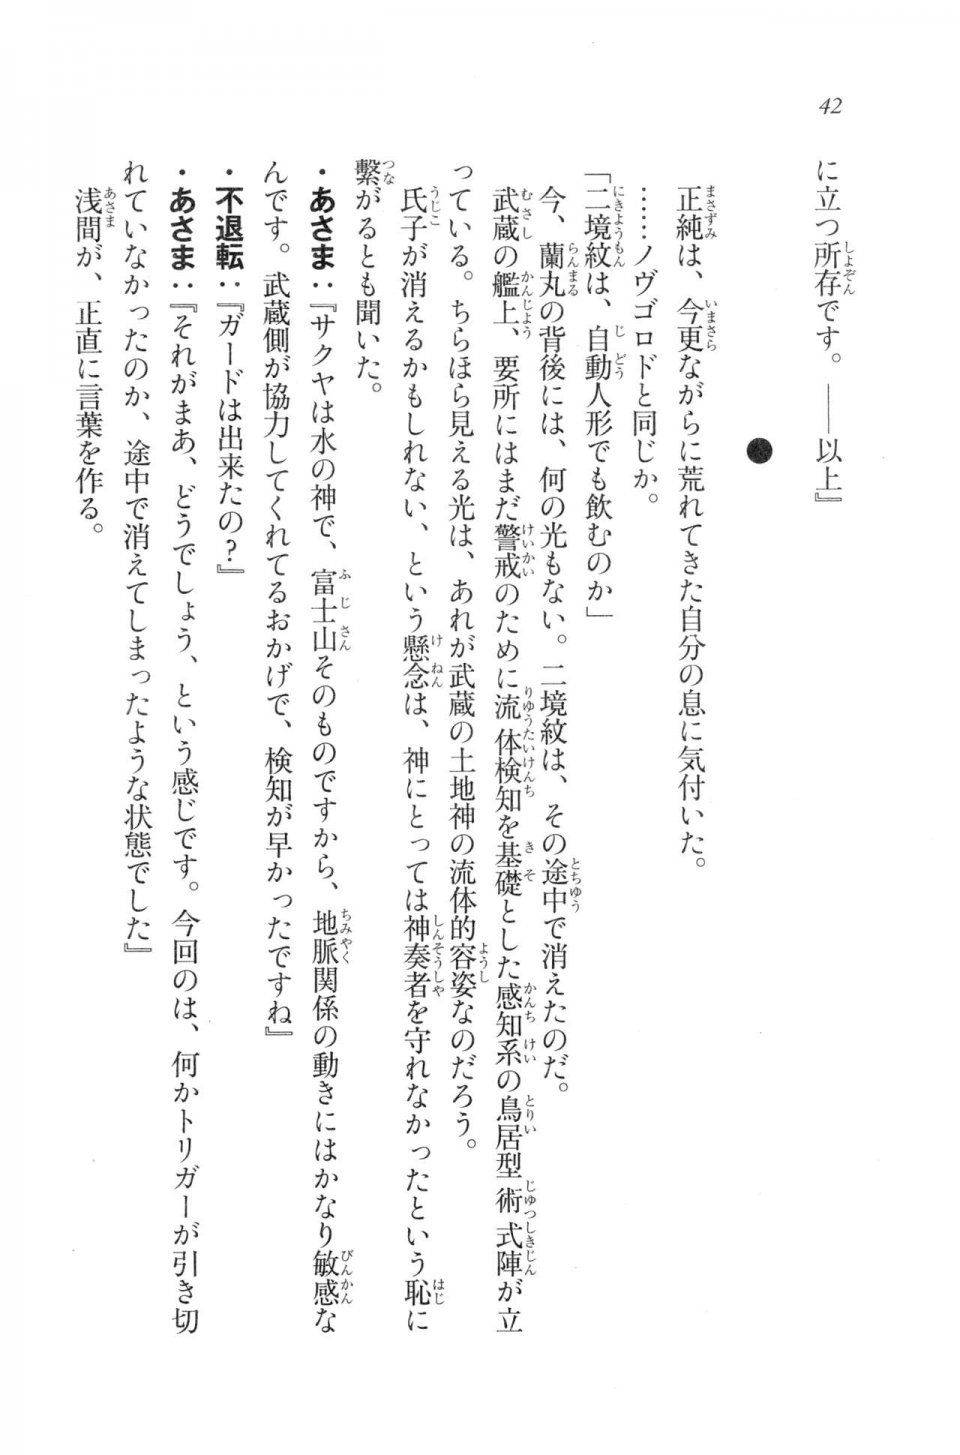 Kyoukai Senjou no Horizon LN Vol 20(8B) - Photo #42